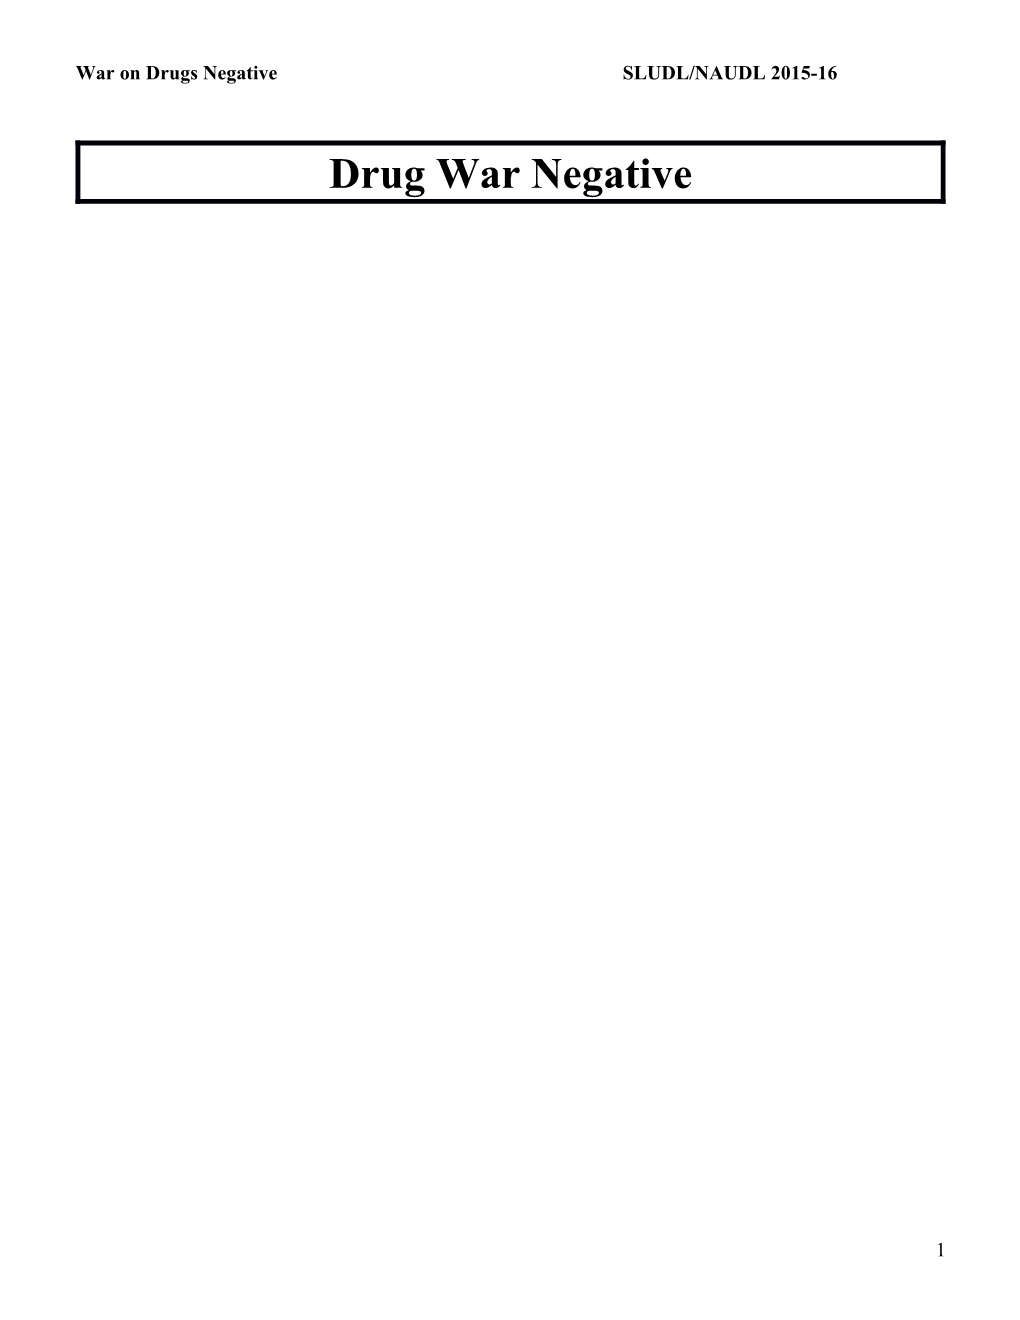 War on Drugs Negative SLUDL/NAUDL 2015-16